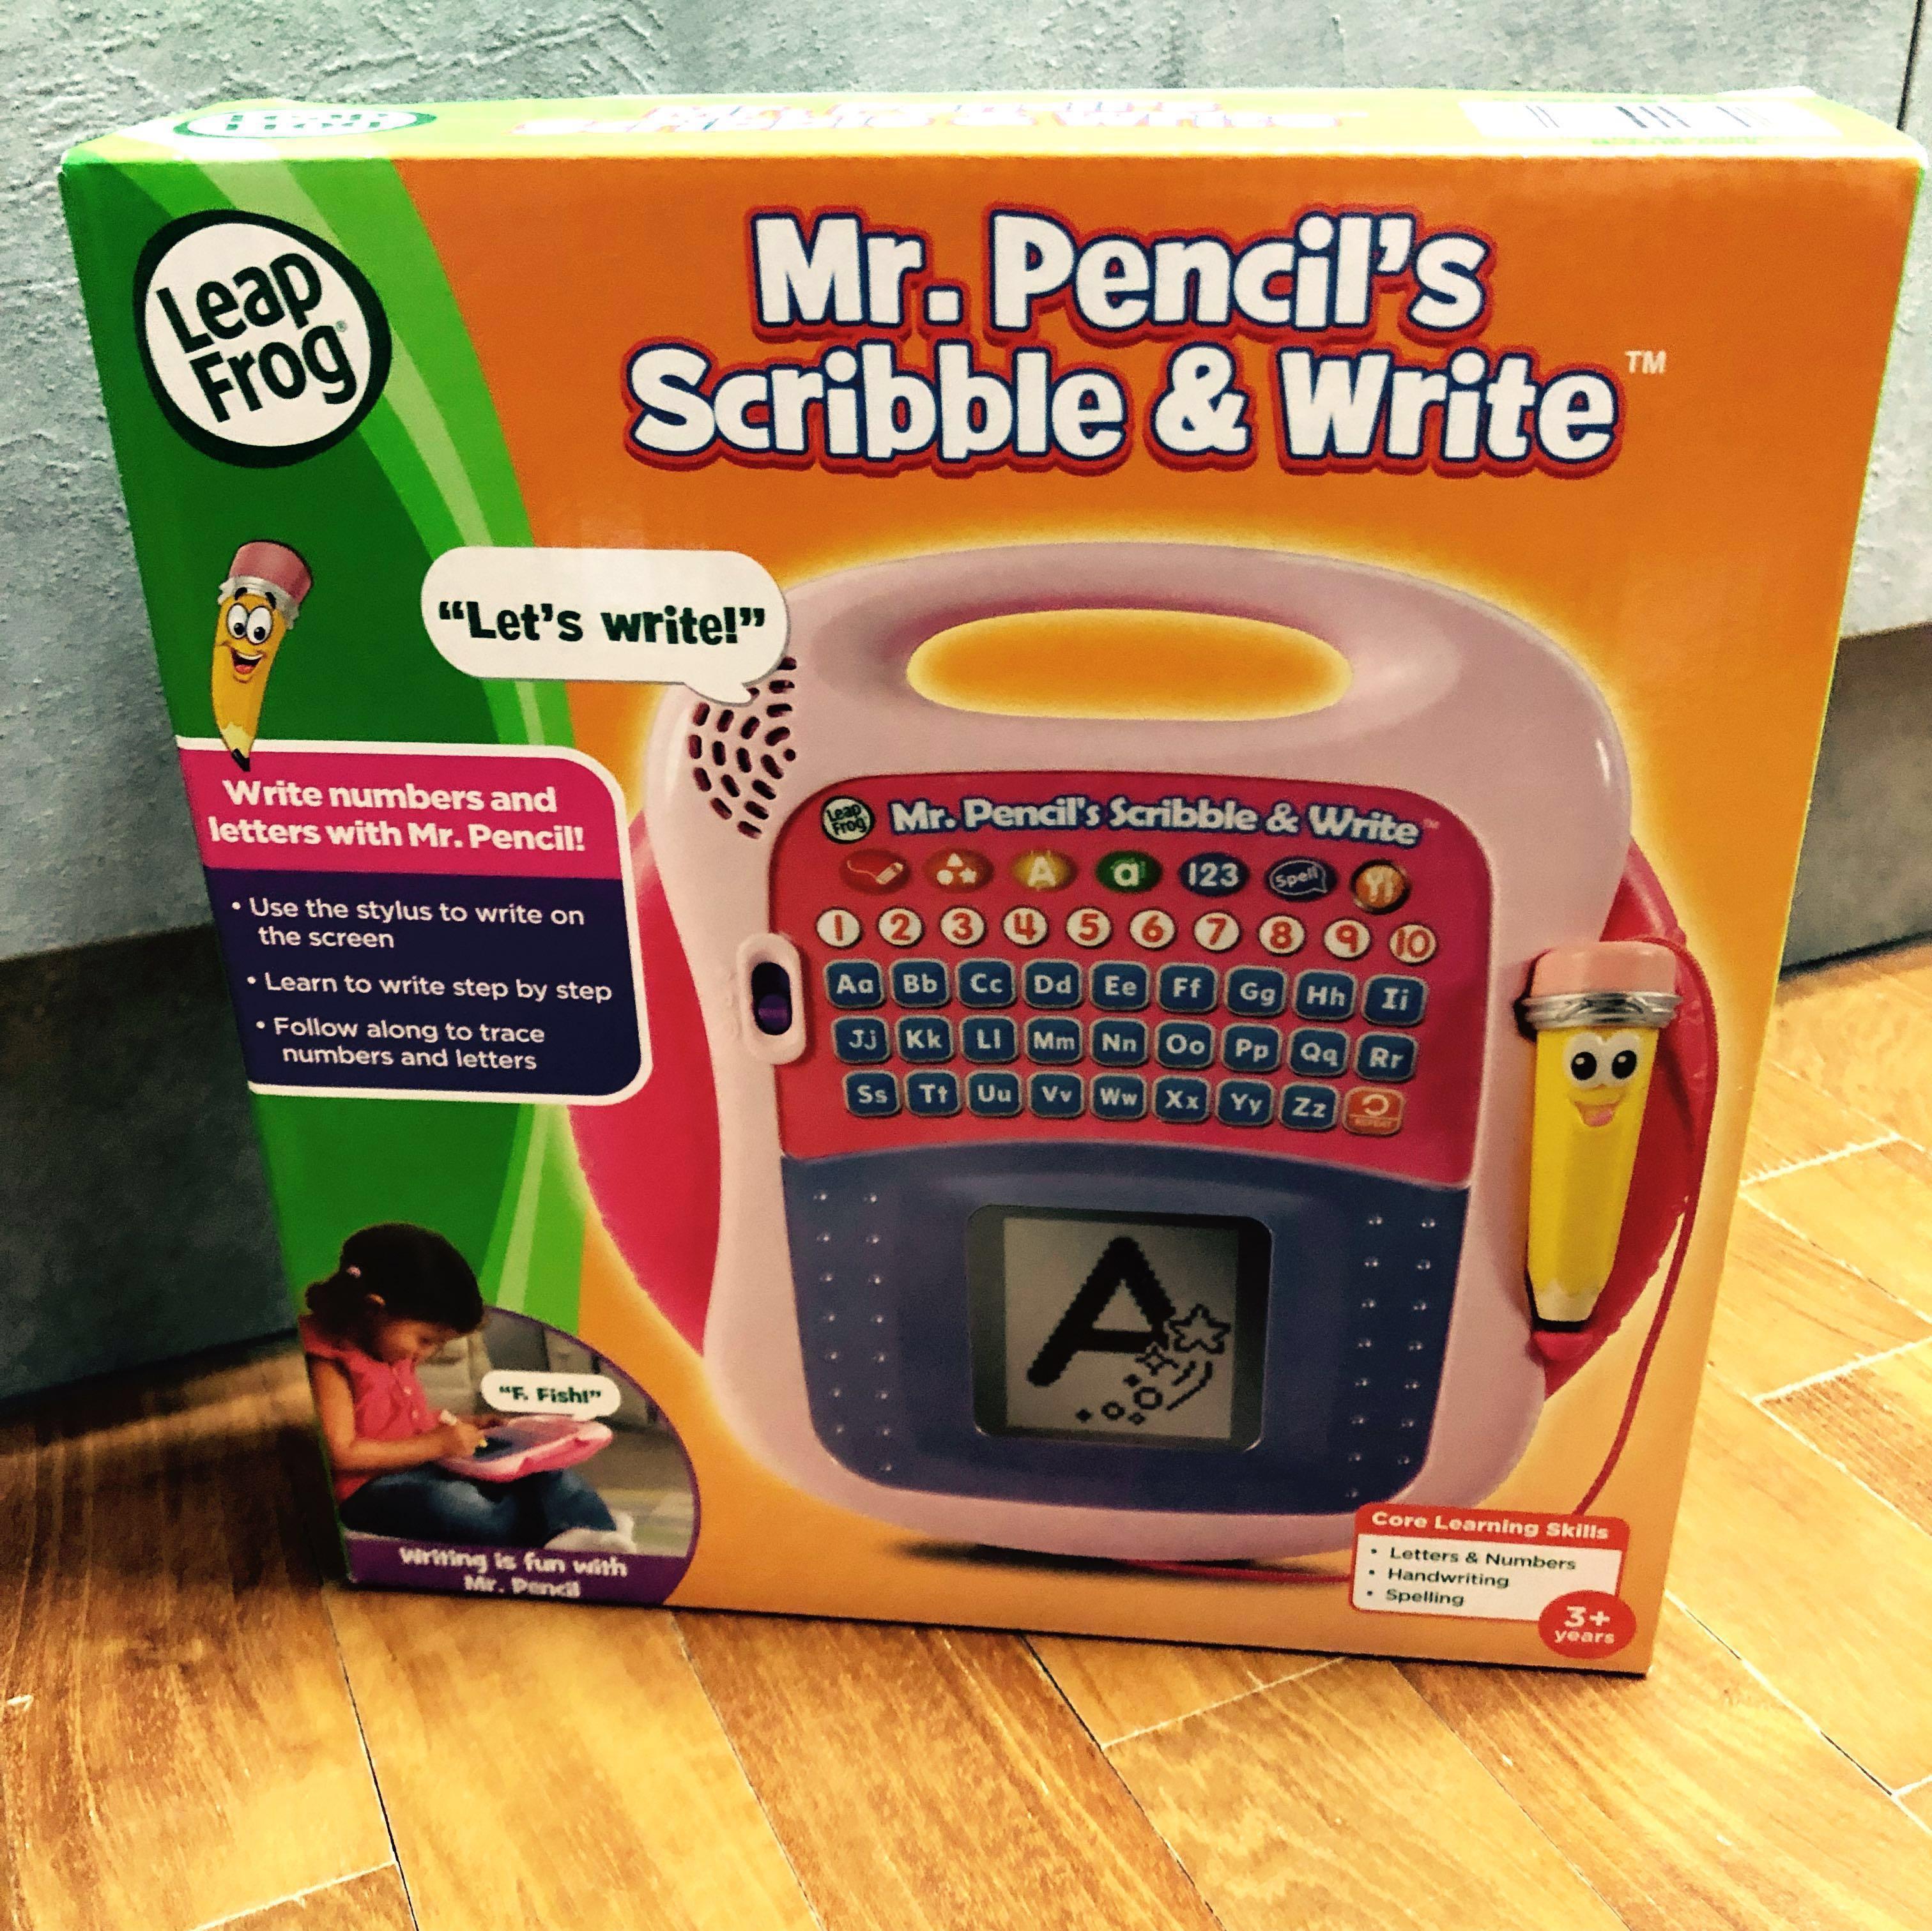 mr pencil's scribble & write